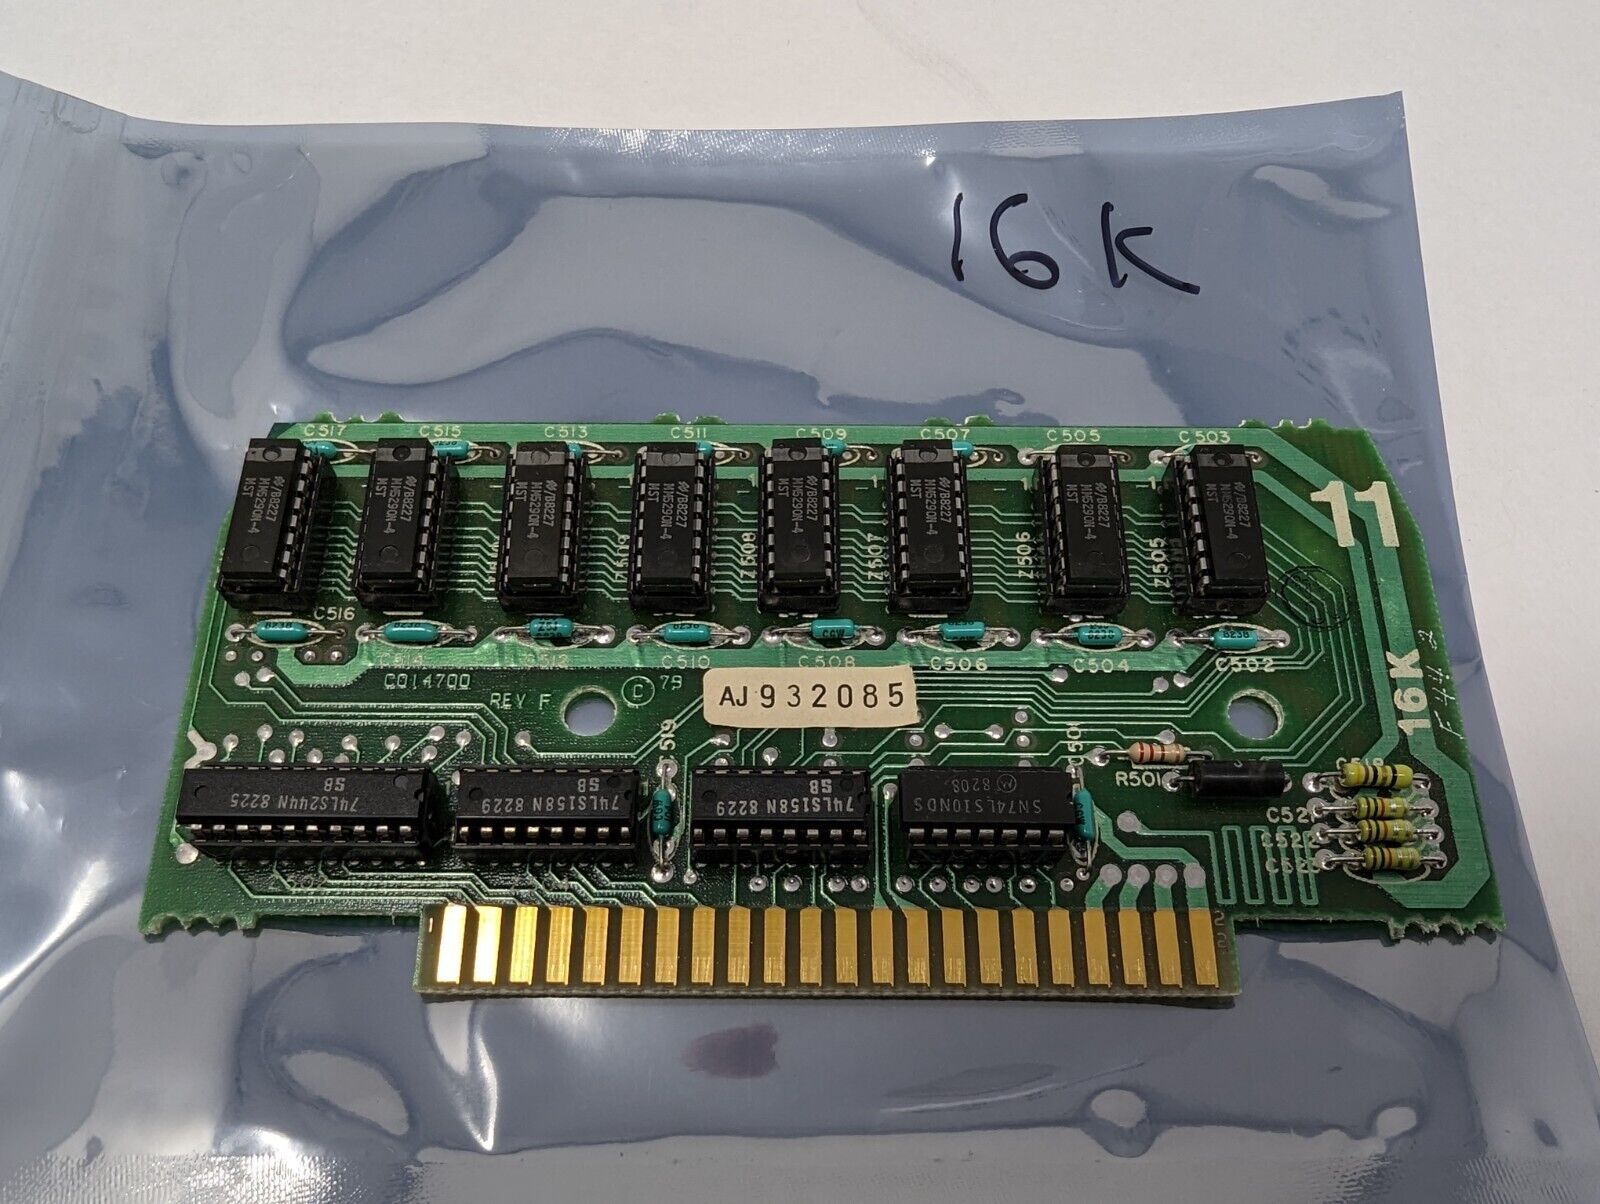 Atari 400 / 800 Computer Parts: 16K Memory Board (WITH SOCKETED RAM)